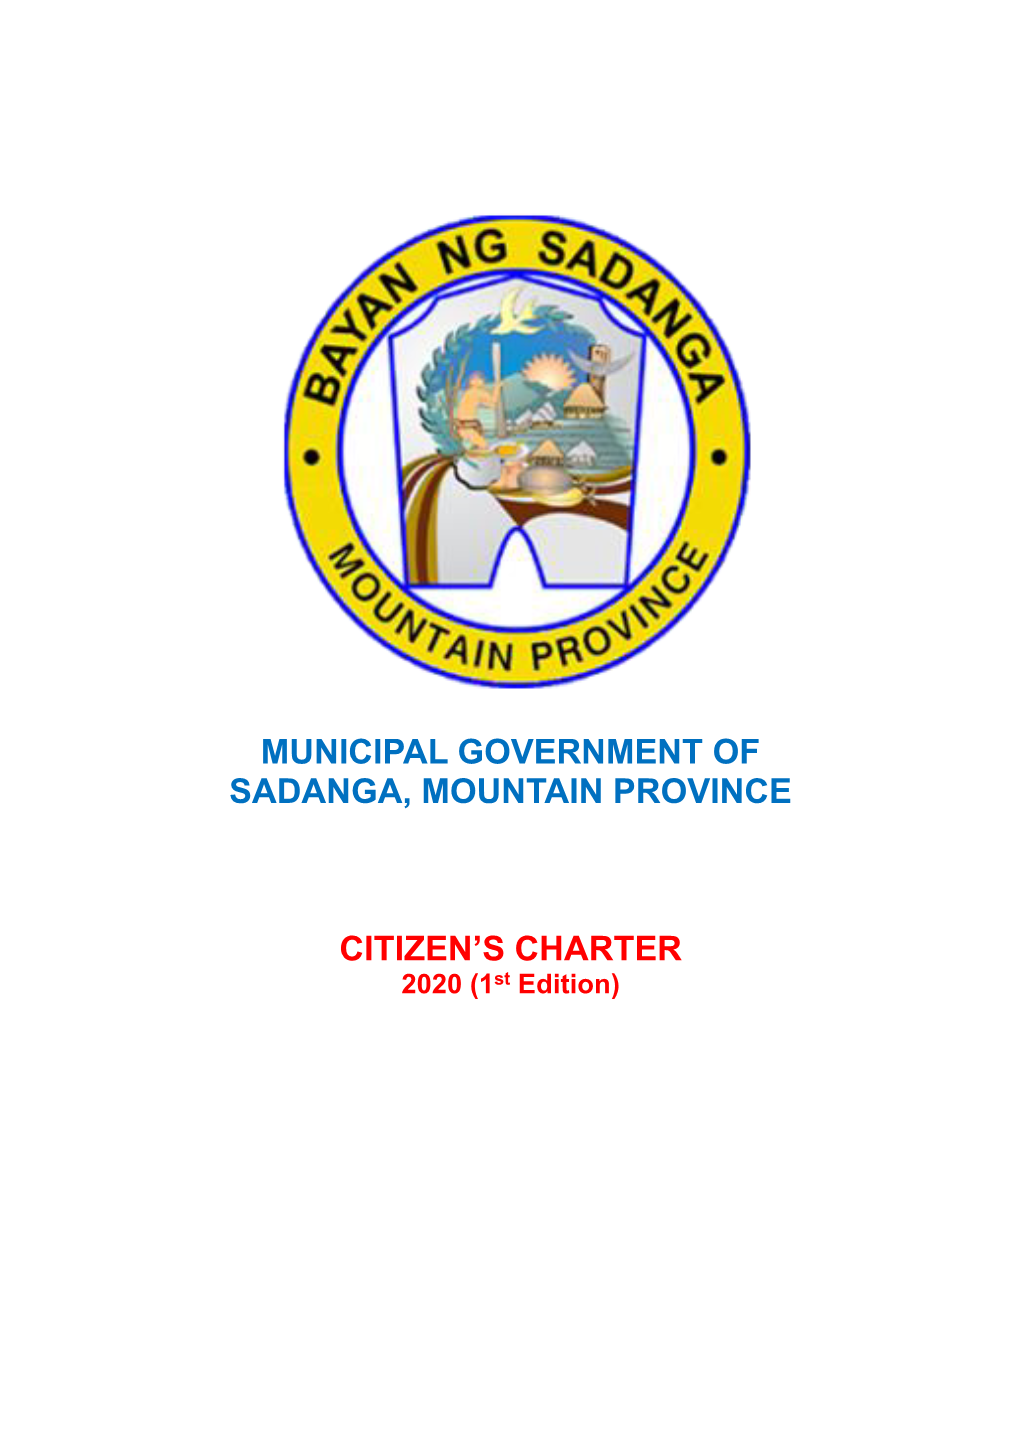 Municipal Government of Sadanga, Mountain Province